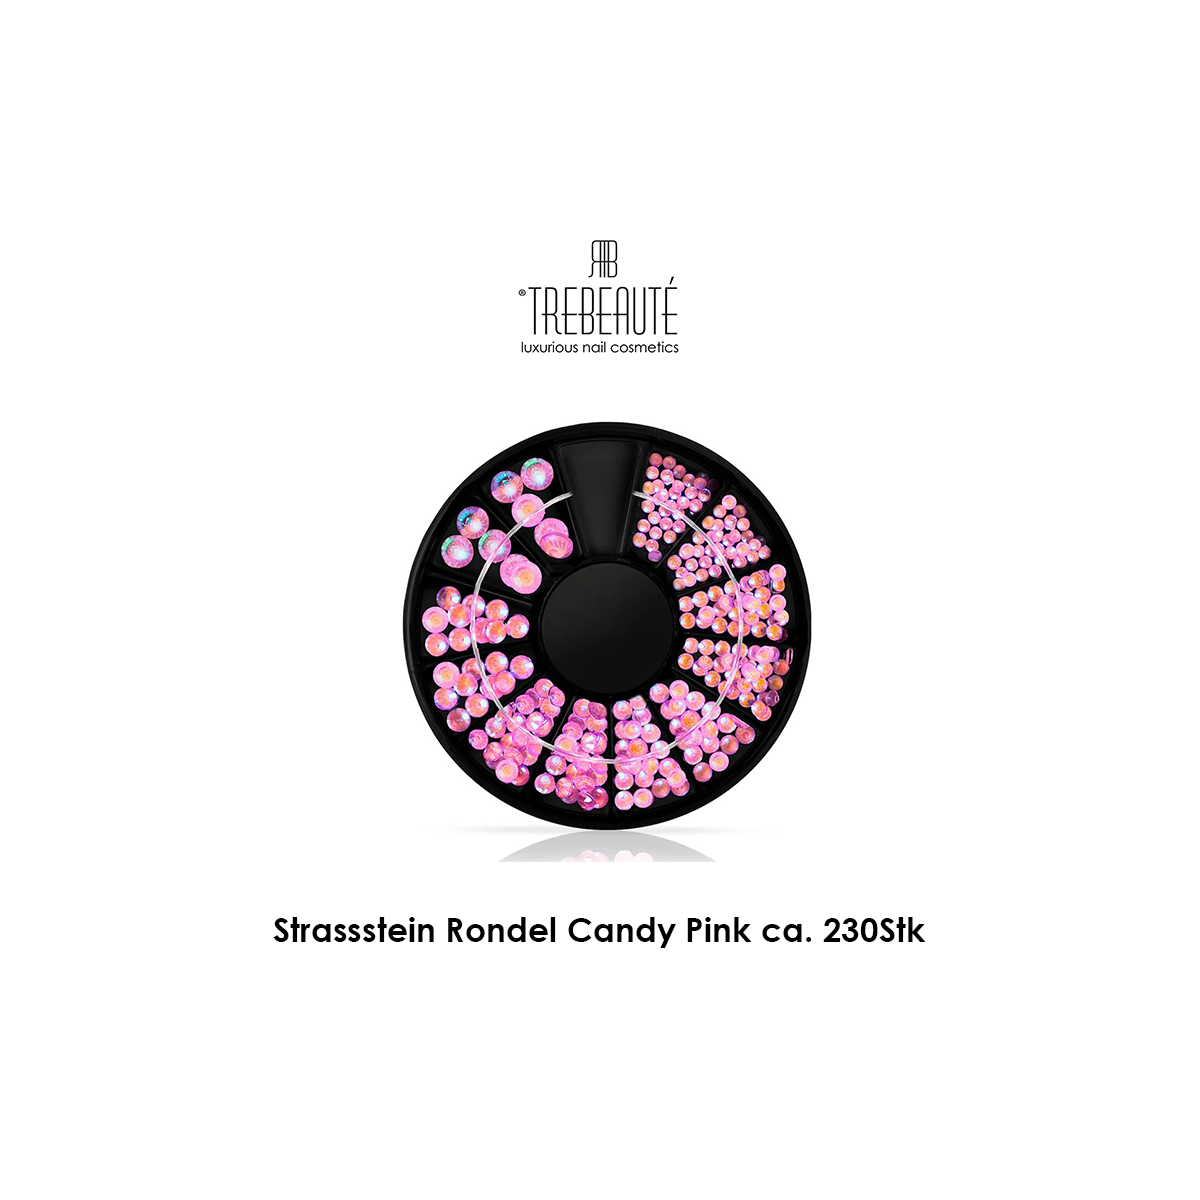 Strassstein Rondell Candy Pink, ca. 230 Stk. diverse...